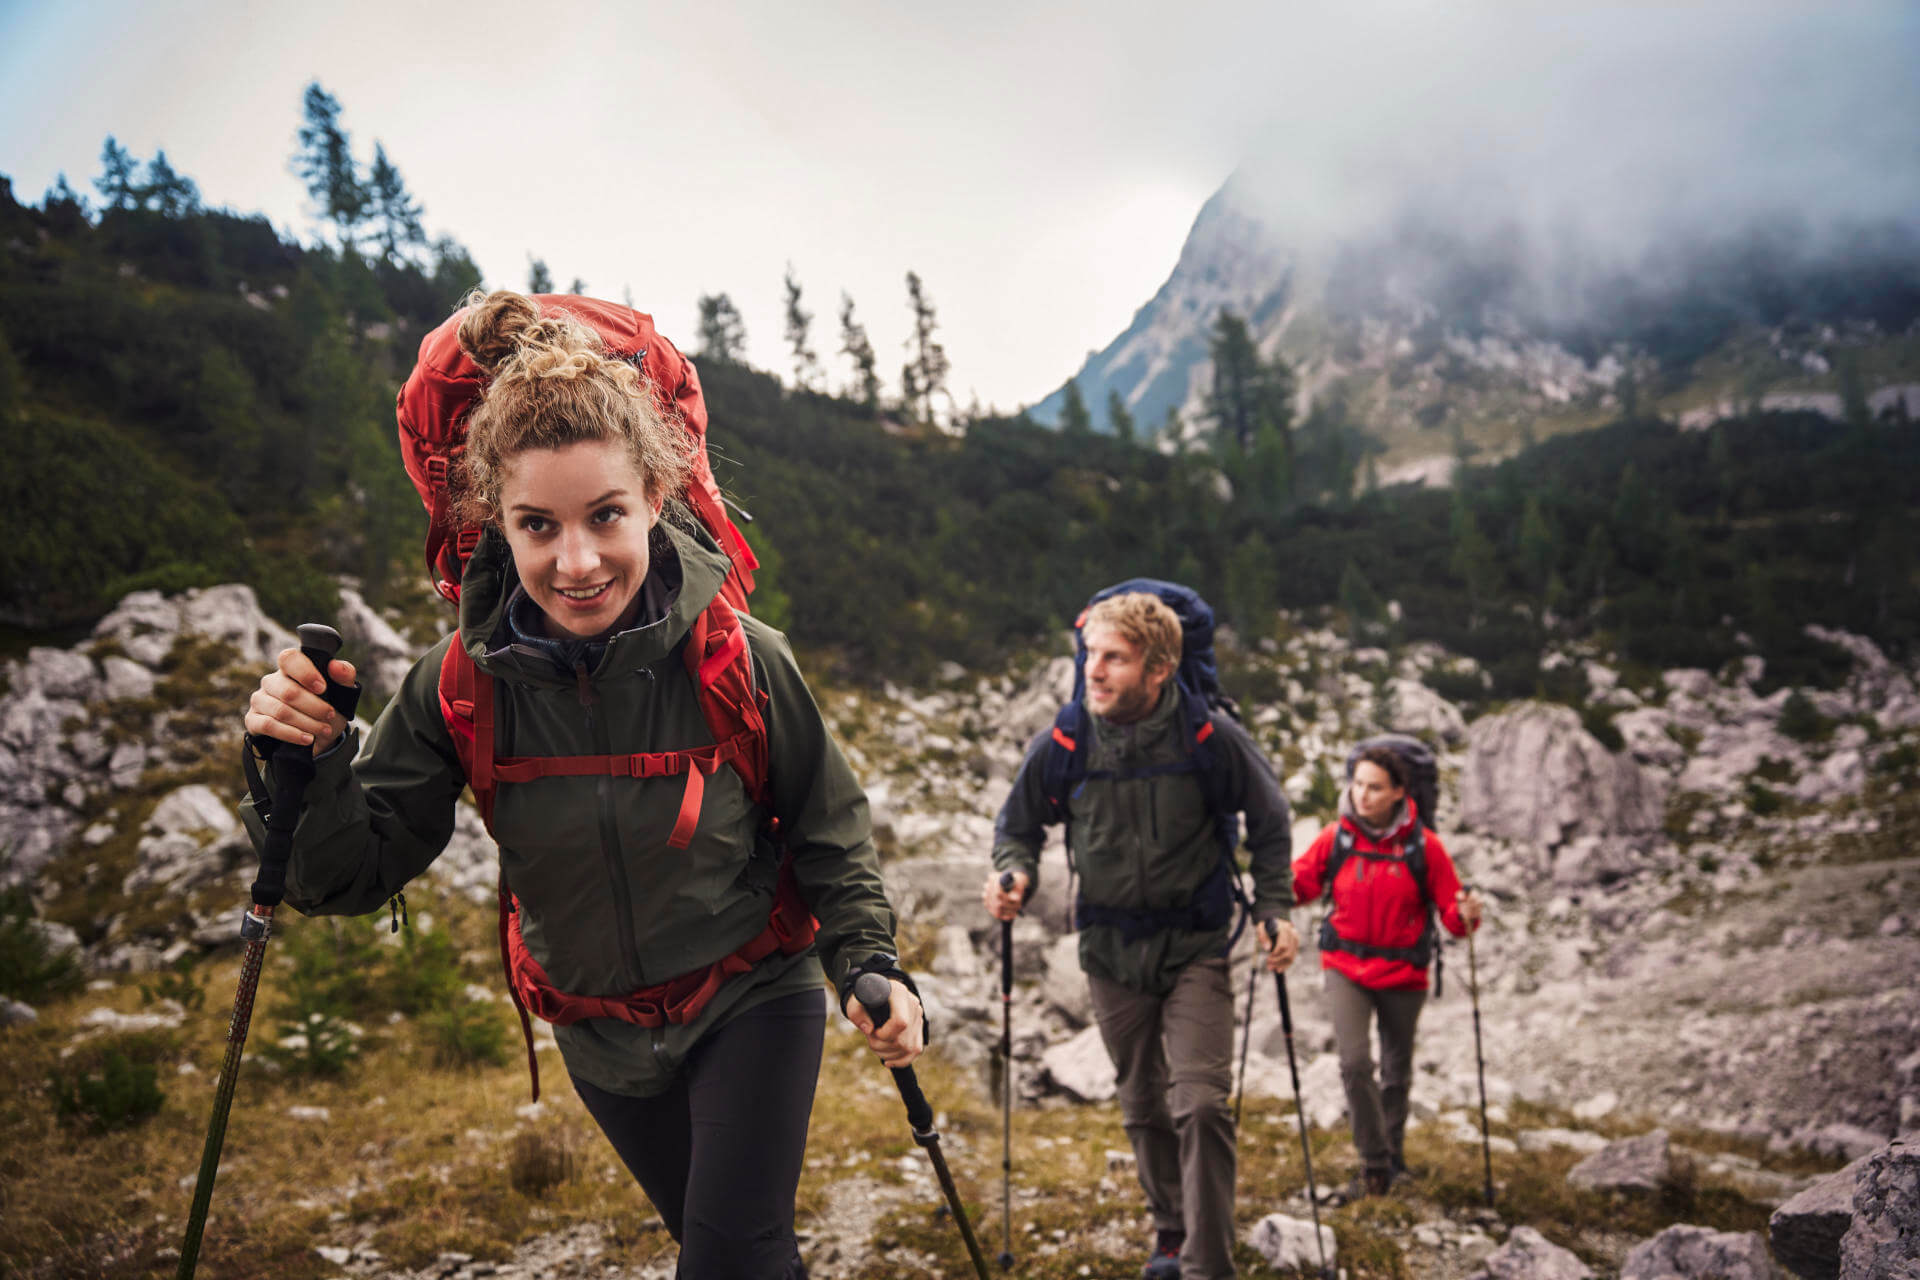 Trekking tips for beginners - 5 expert tips